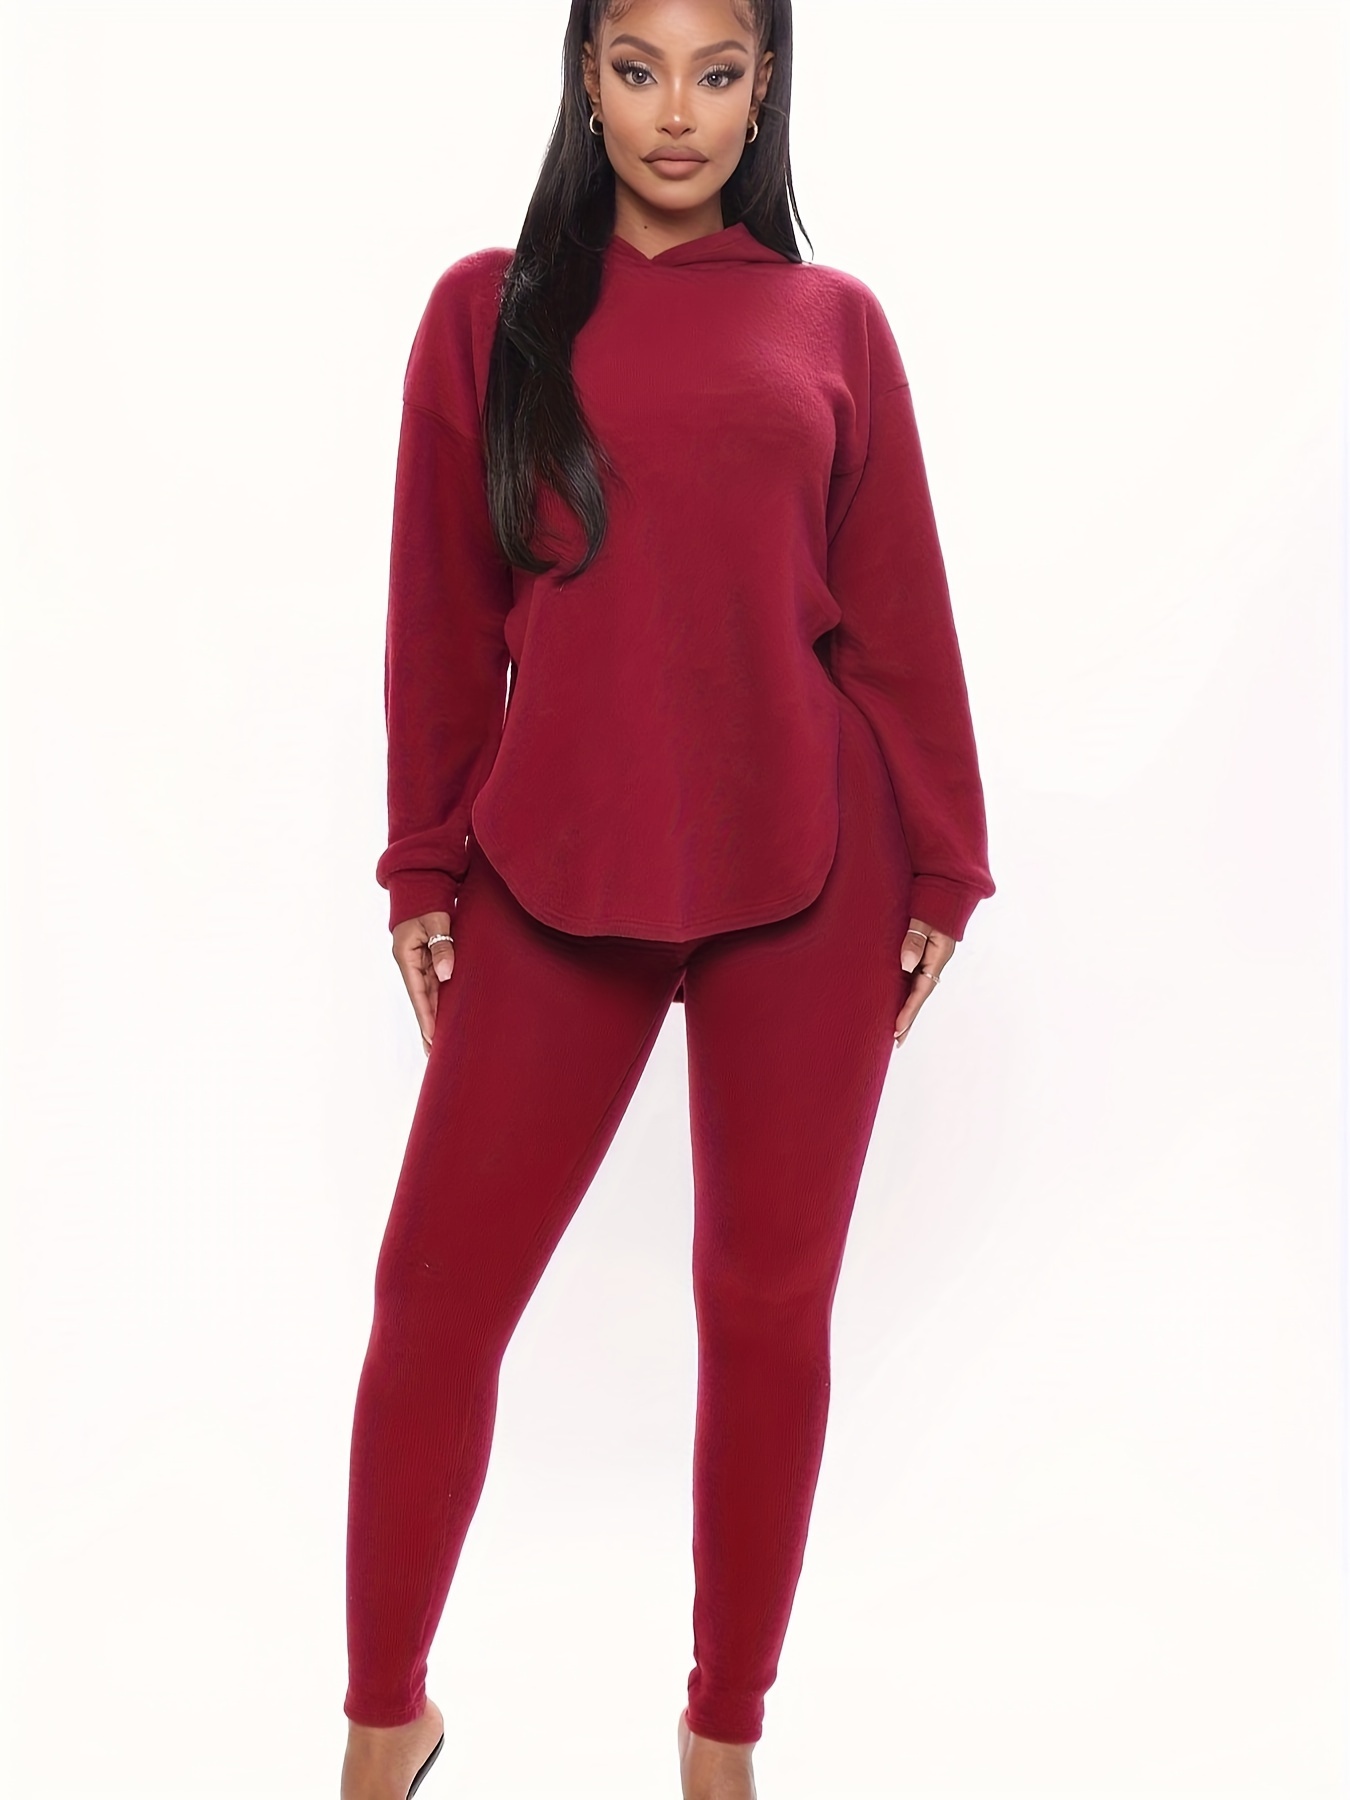 KGBAD Women Suit Drop Shoulder Solid Top & Leggings Set (Color